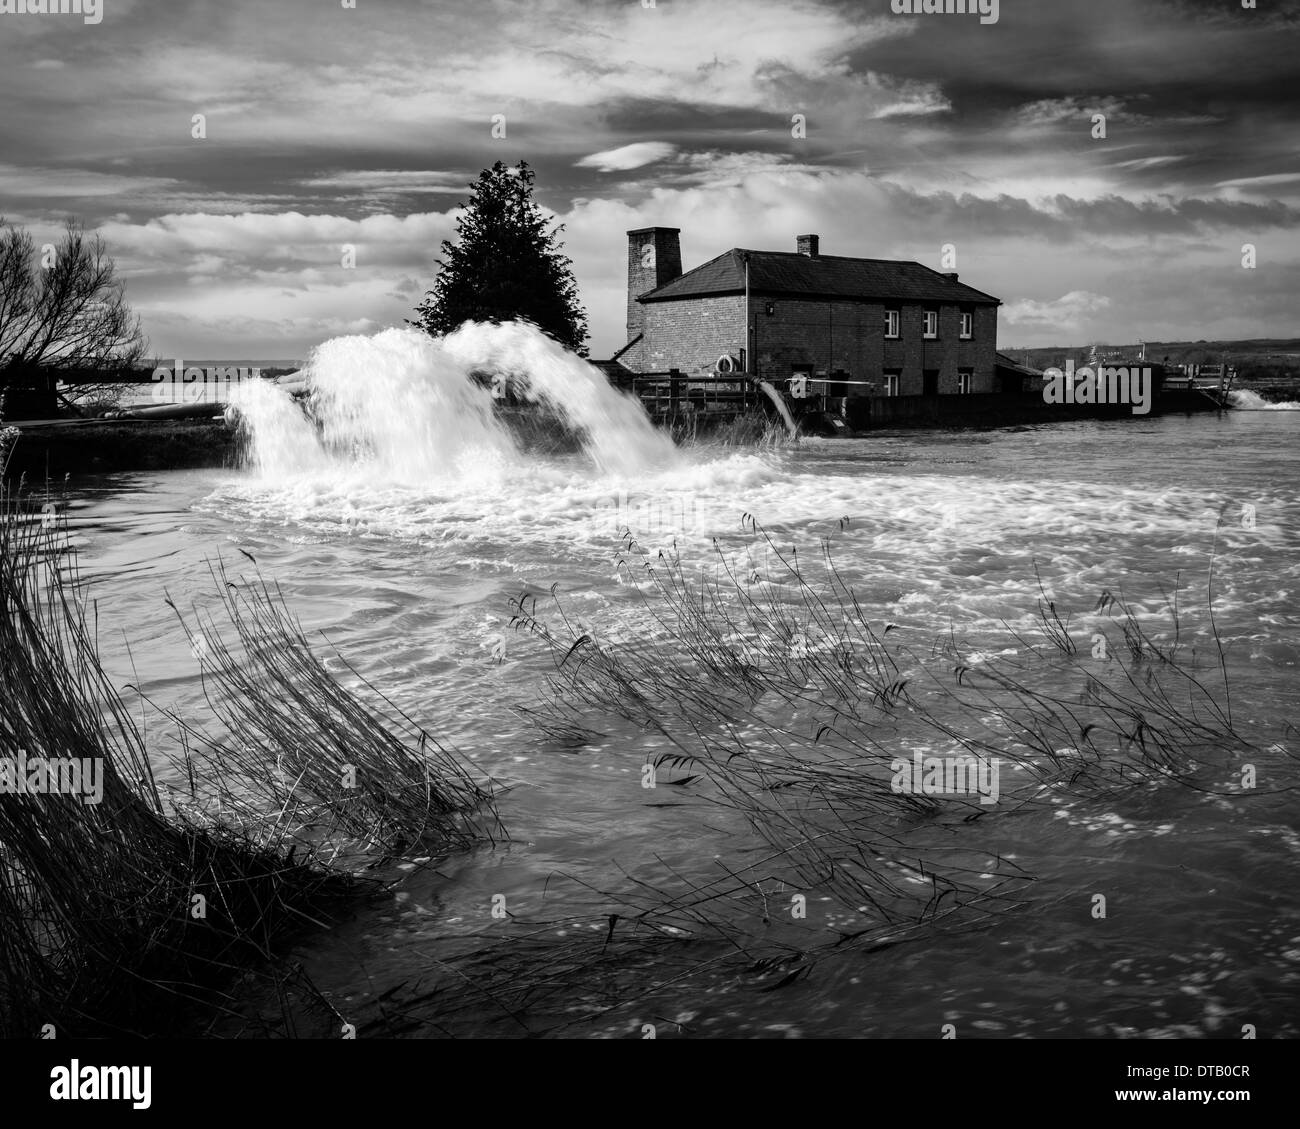 Station de pompage Burrowbridge, déverser dans la crue de la rivière Parrett, déjà gonflé pendant l'inondation de 2014 Banque D'Images